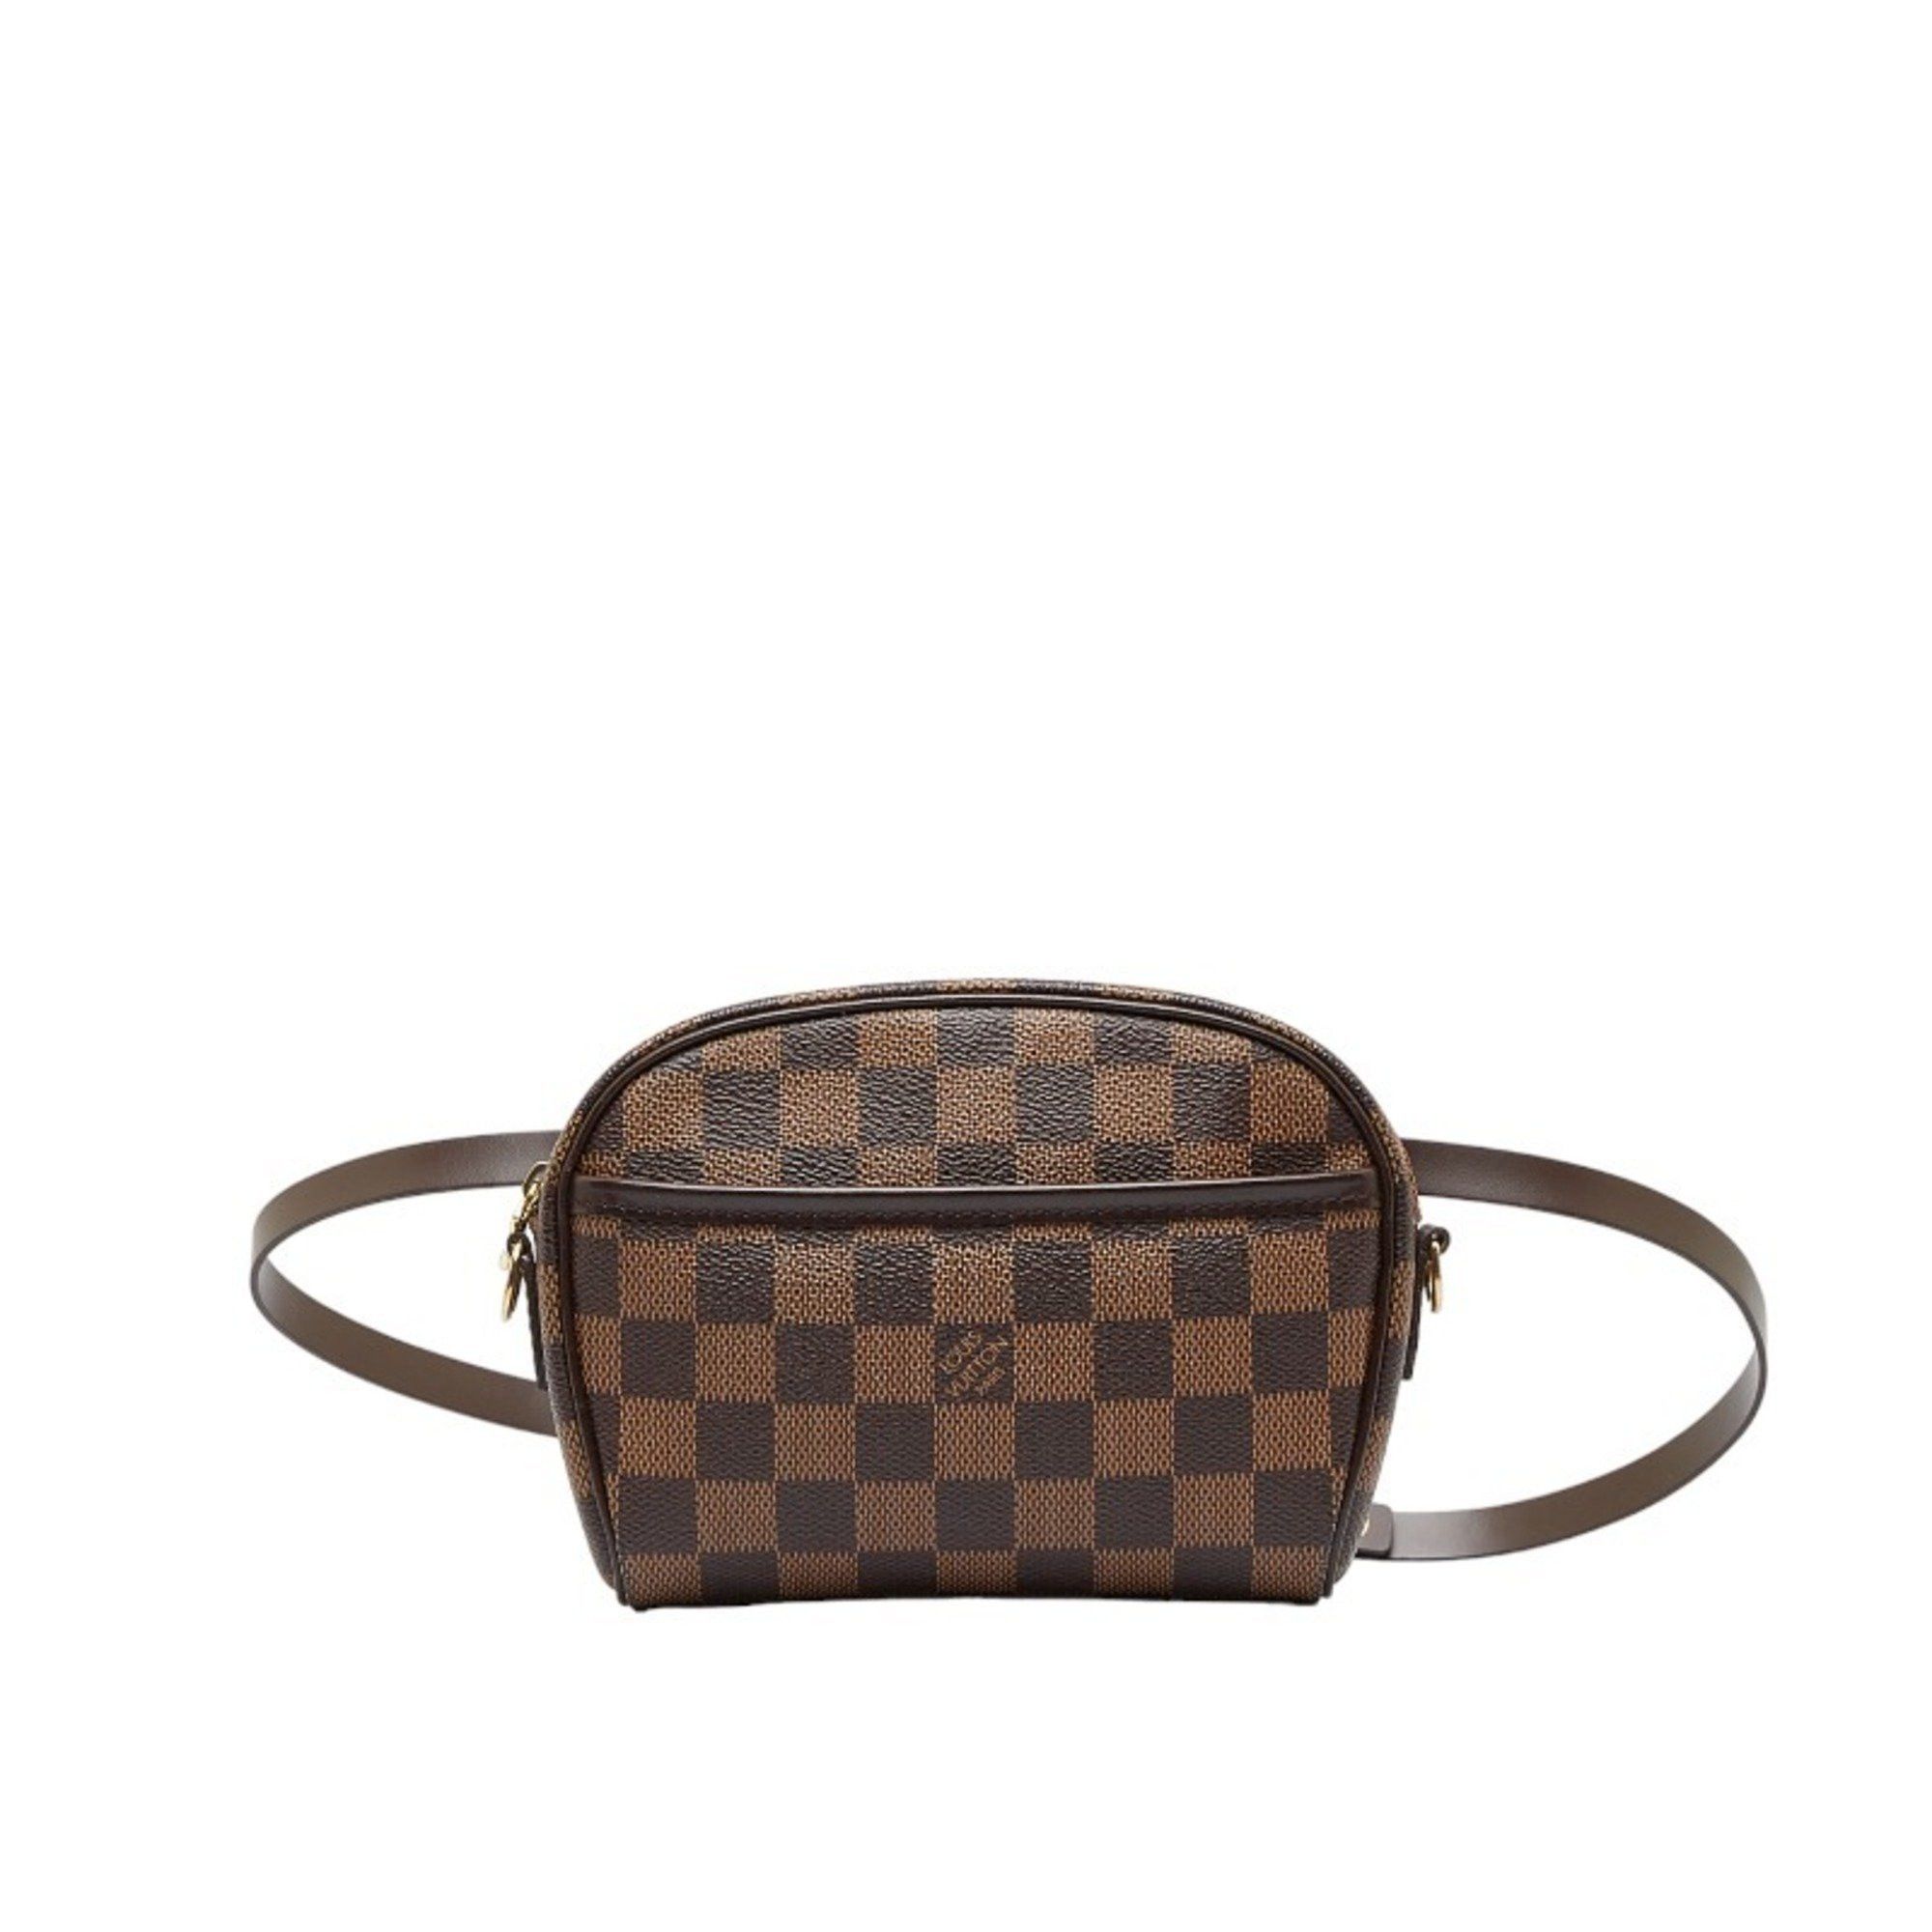 Used Louis Vuitton Sack Plastic /Tote Bag/Pvc/Brown/Brown/M51140 Bag